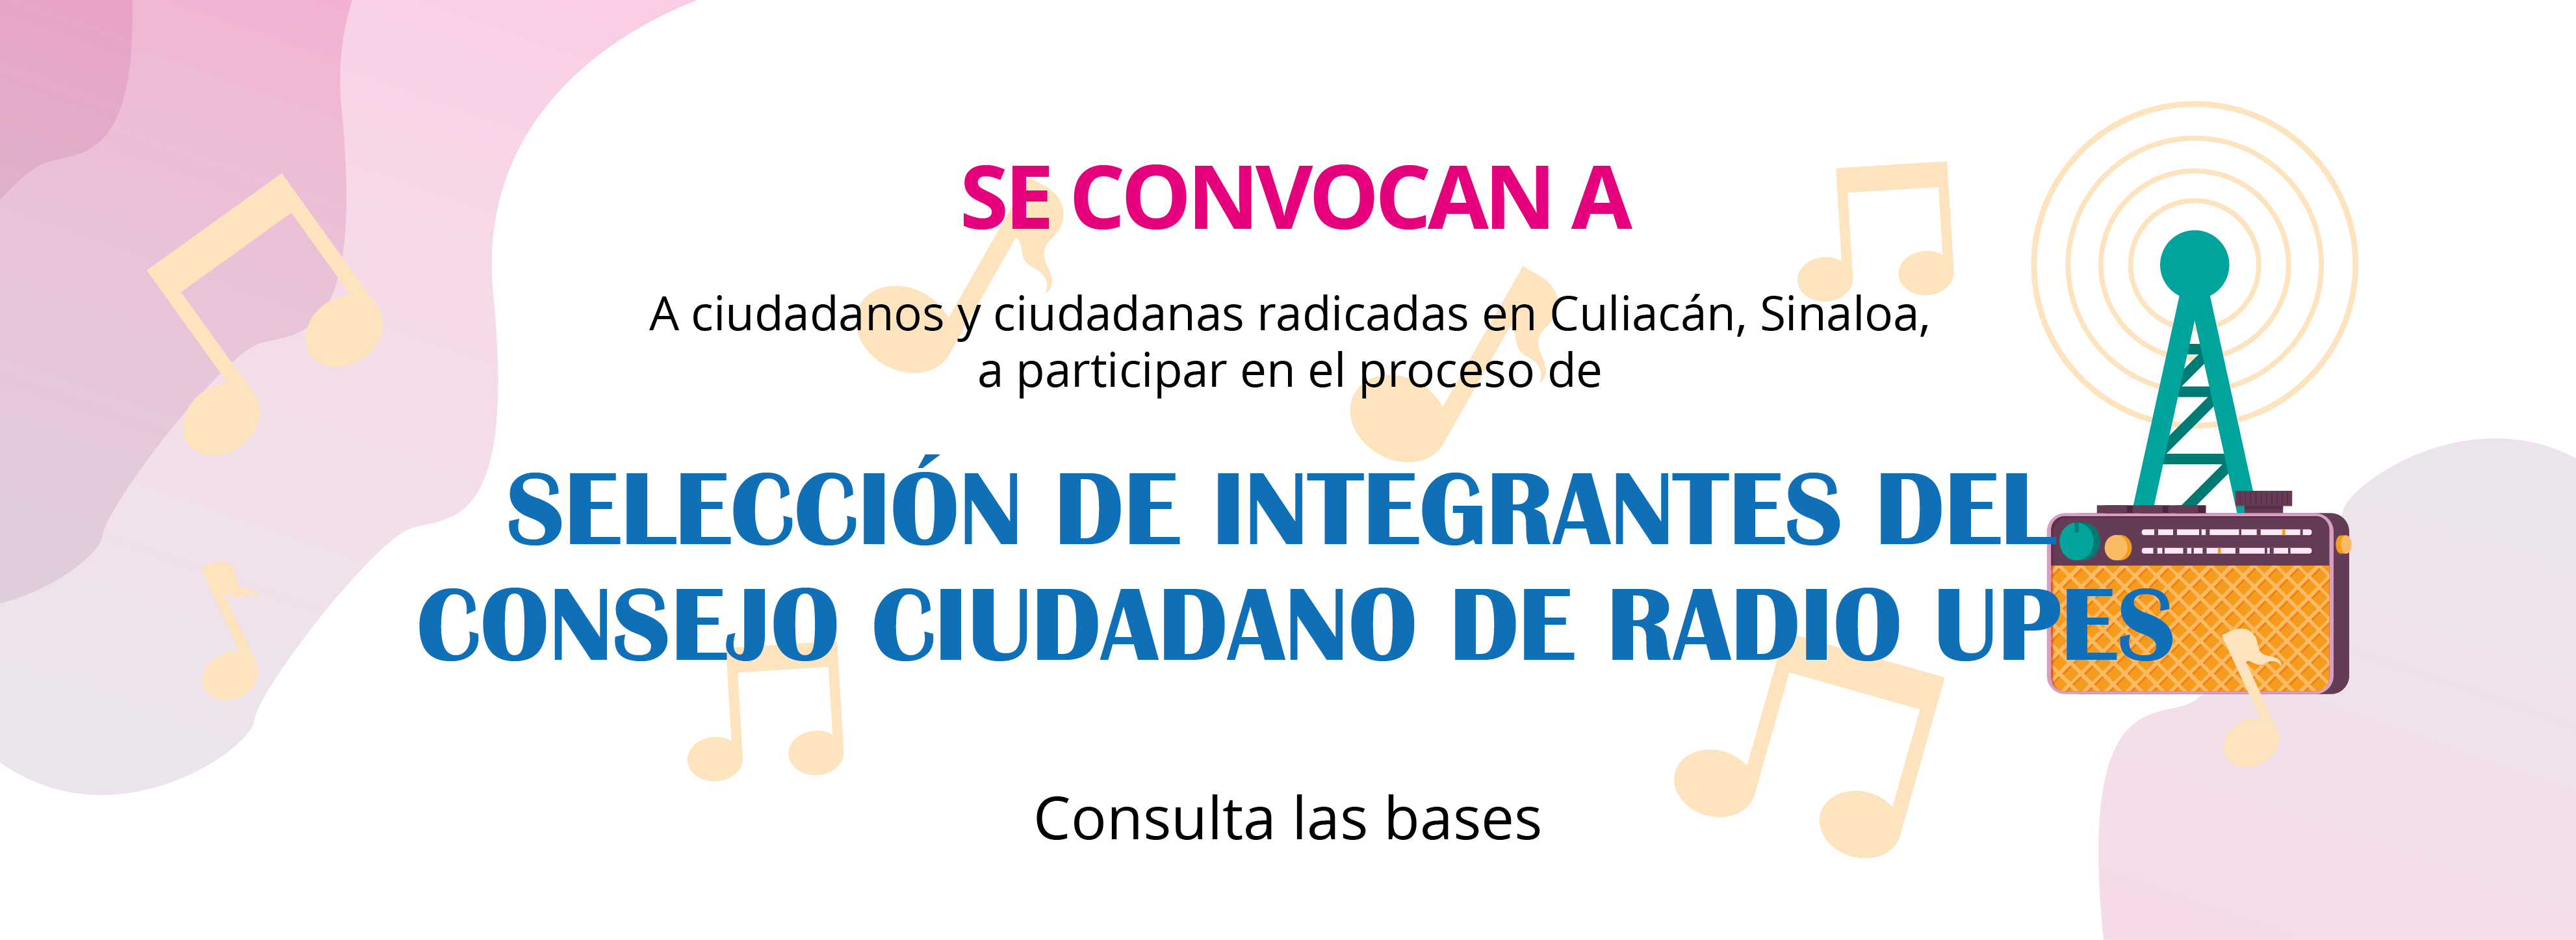 Convocatoria_Seleccion_de_Integrantes_del_Consejo_Ciudadano_de_Radio_UPES_Banner_web